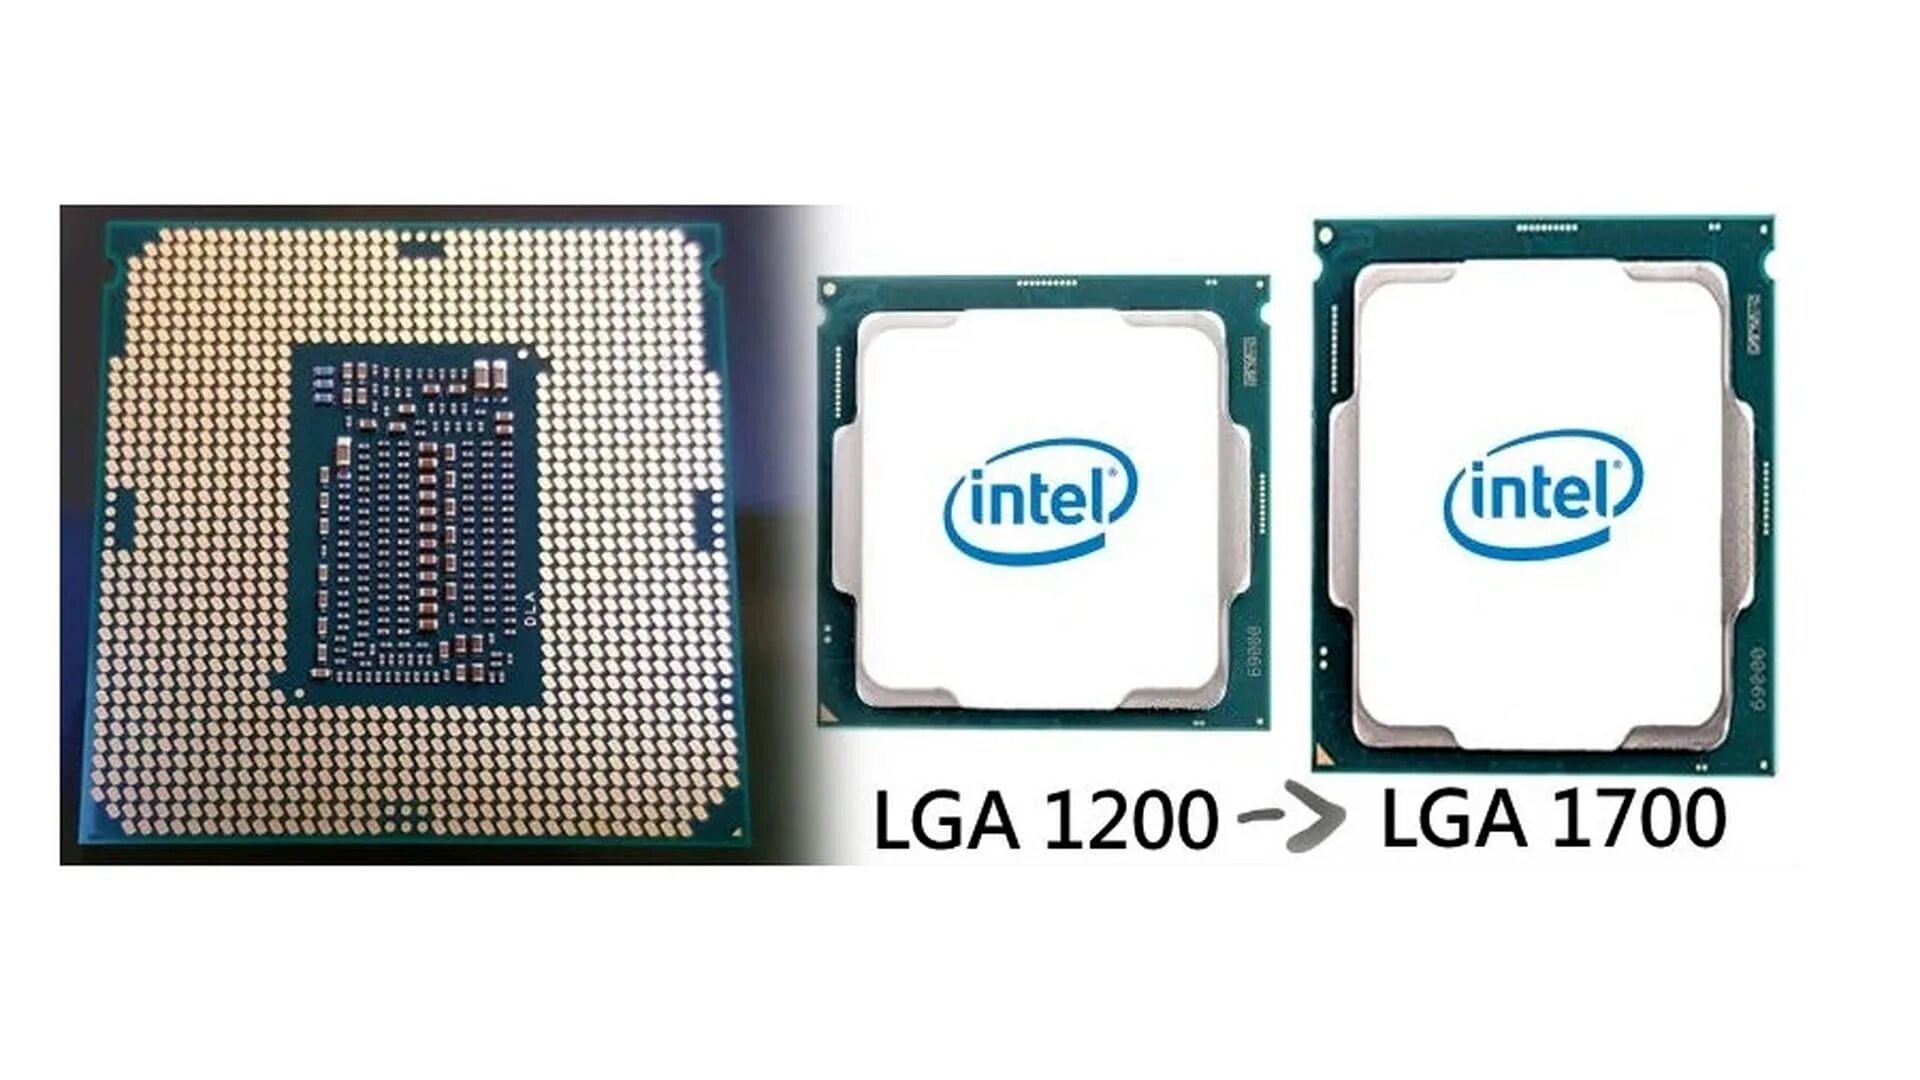 Процессоры на 1700 сокет. Сокет Интел 1700. LGA 1700 процессоры Intel. LGA 1700 vs LGA 1200 процессор. Сокет Интел лга 1700.